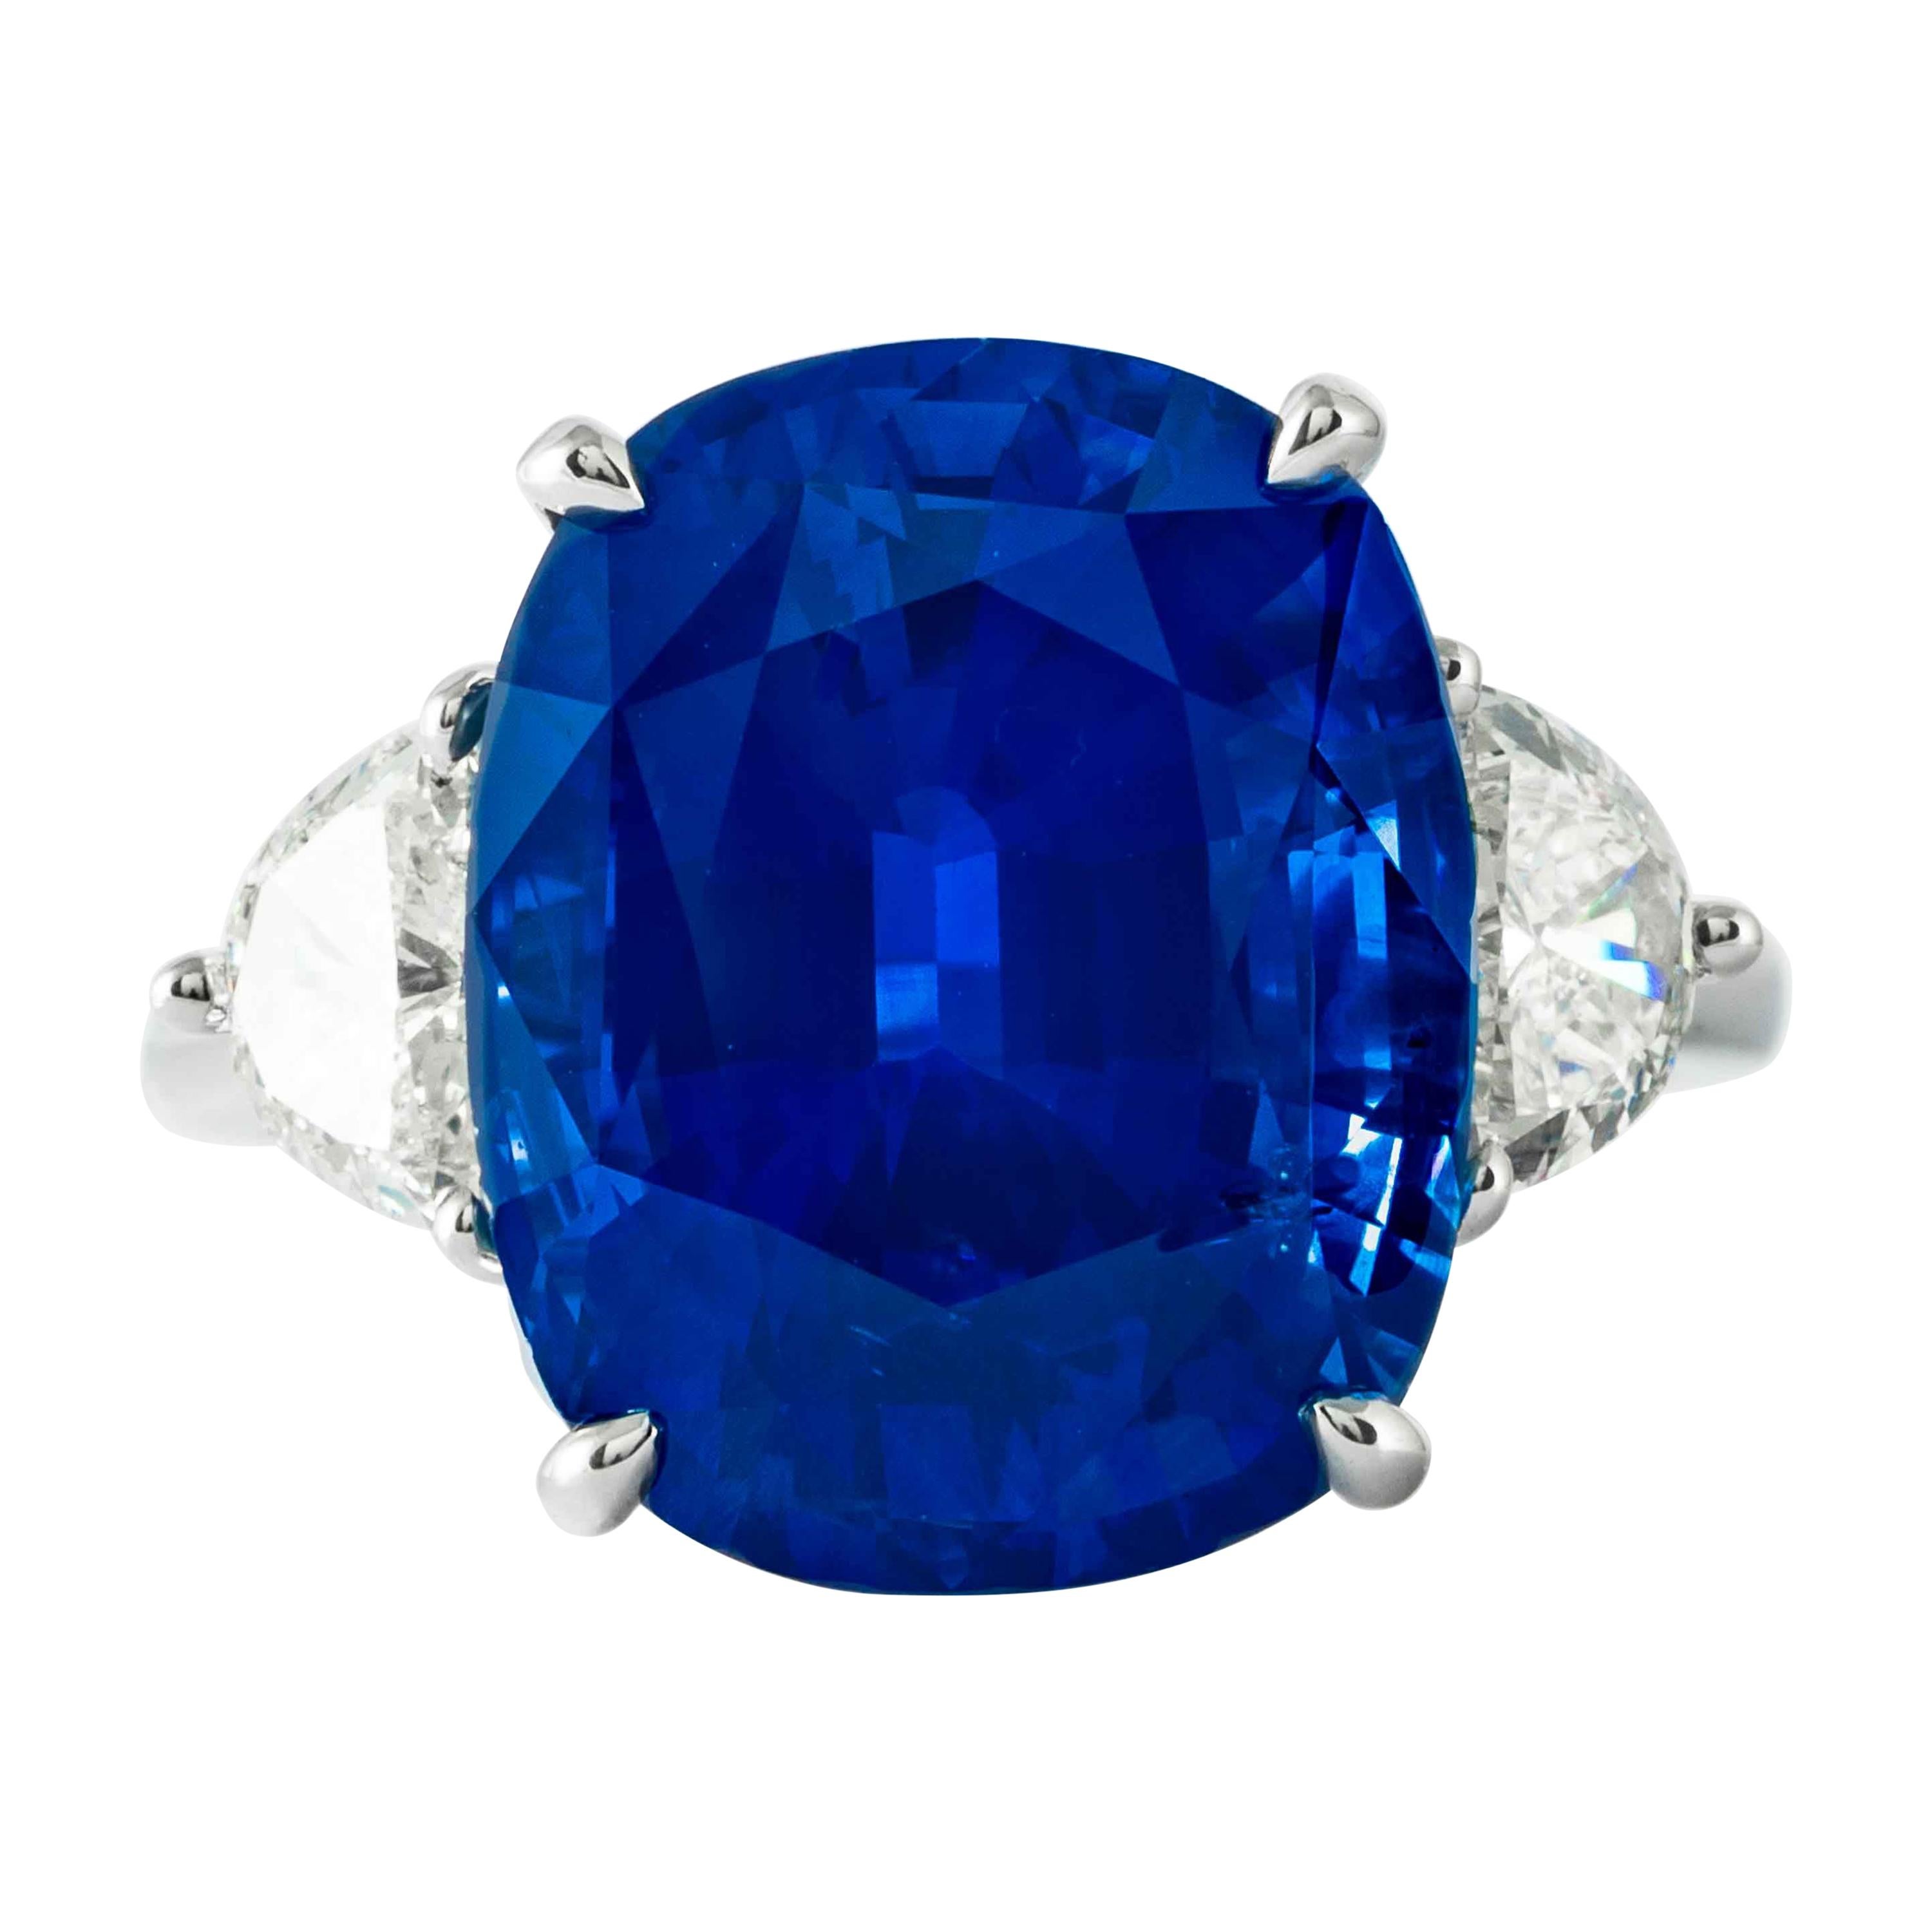 Bague Shreve, Crump & Low en platine avec saphir bleu de 13,02 carats et diamants